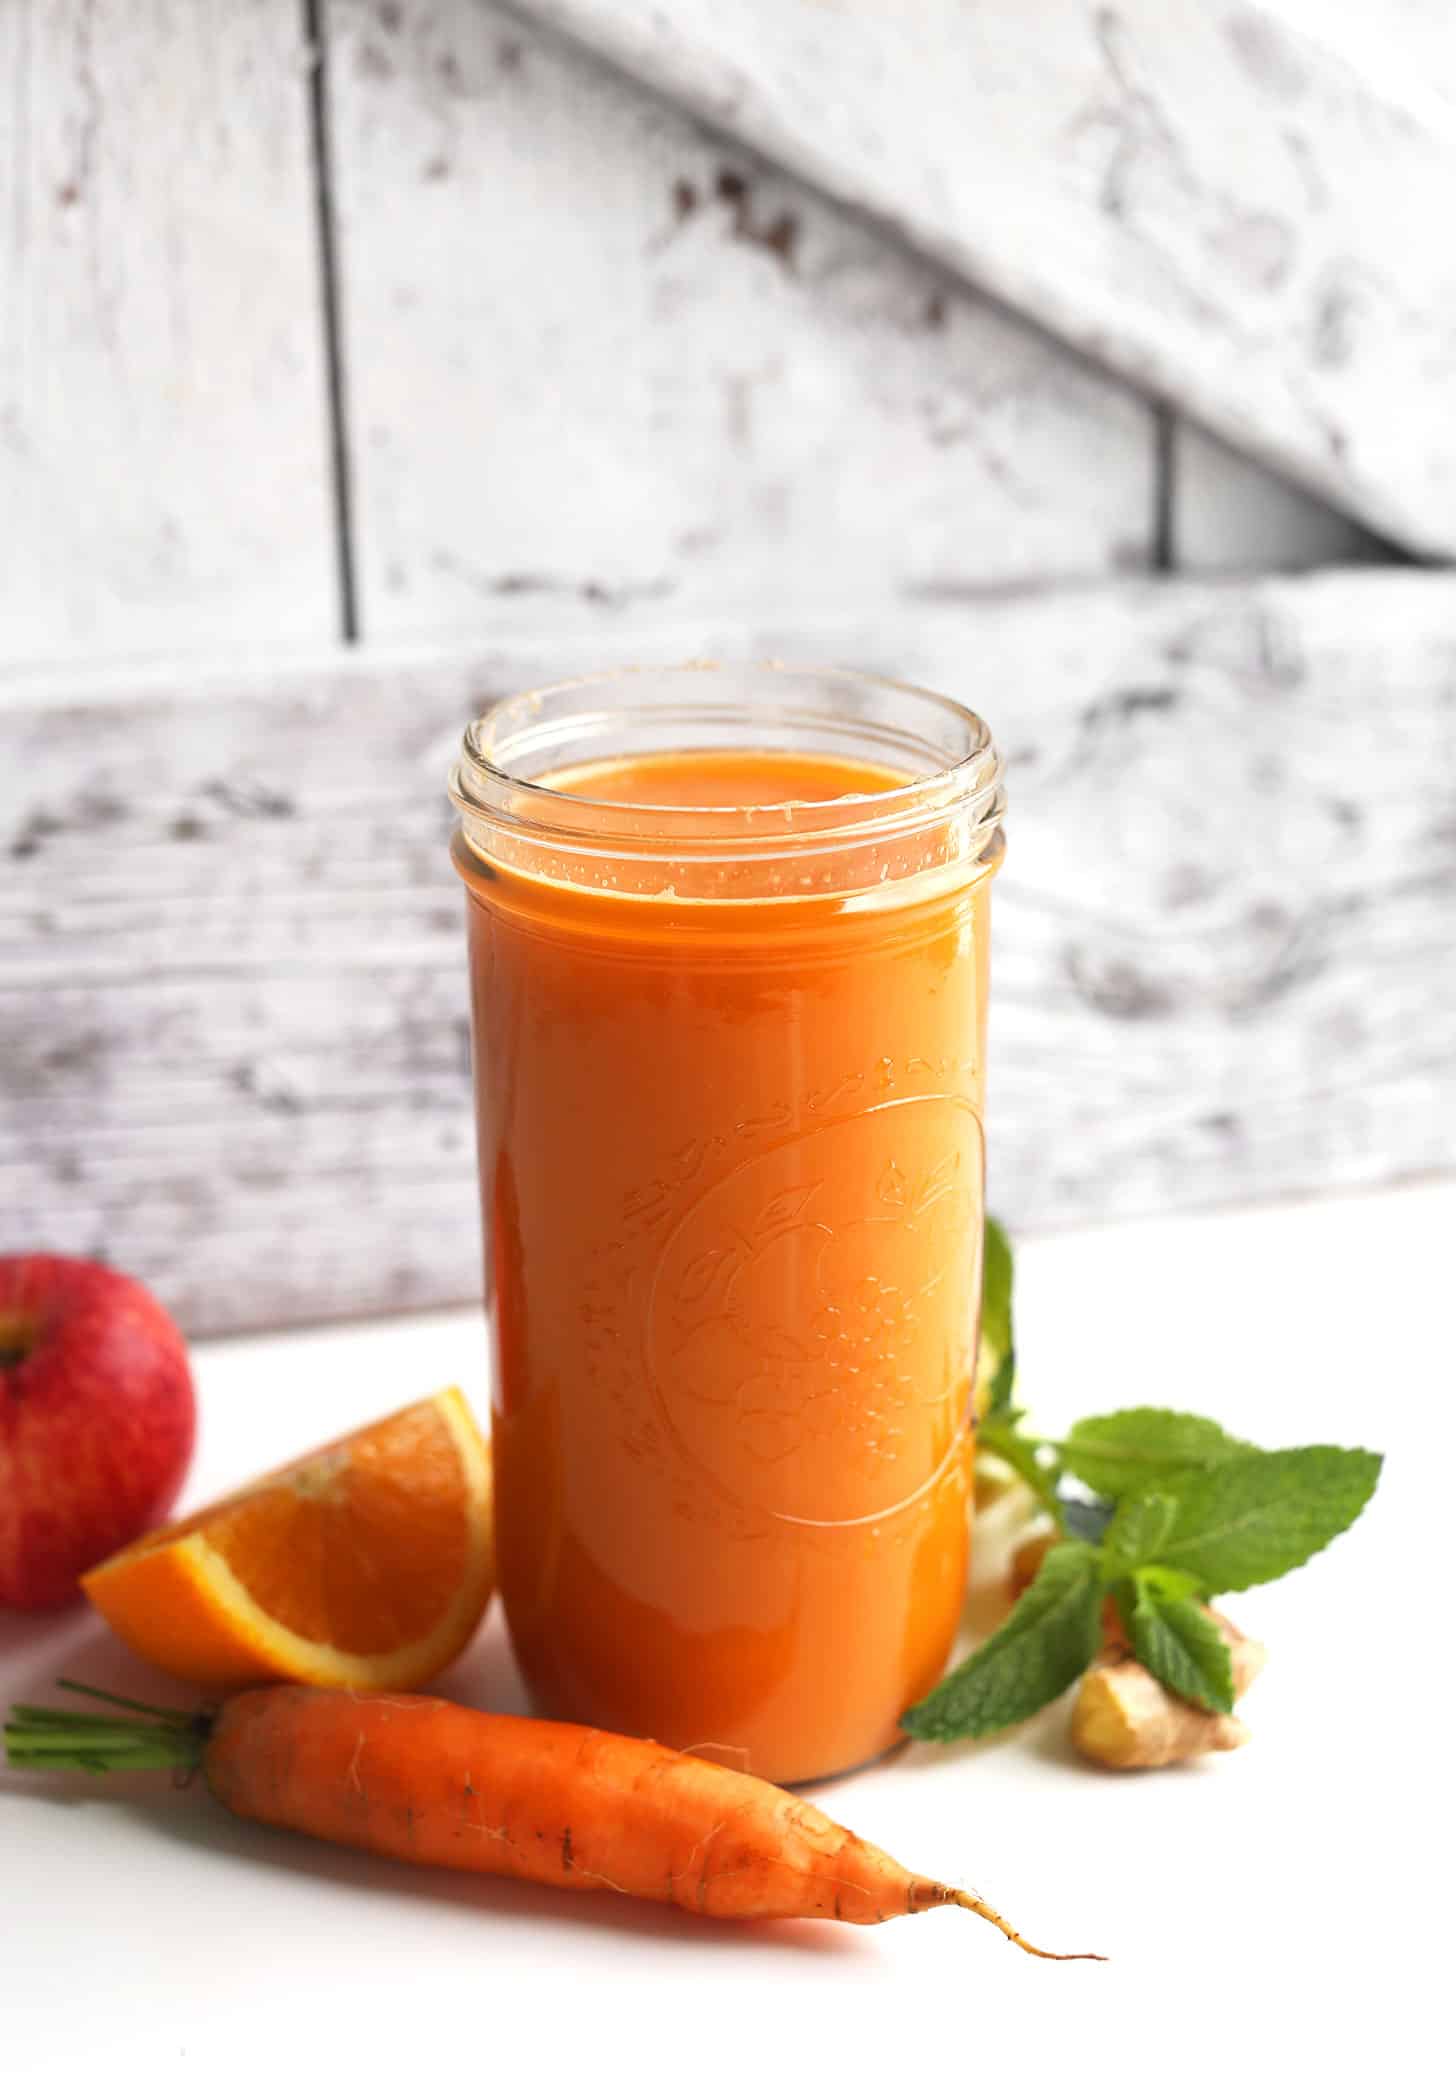 Carrot orange juice recipe